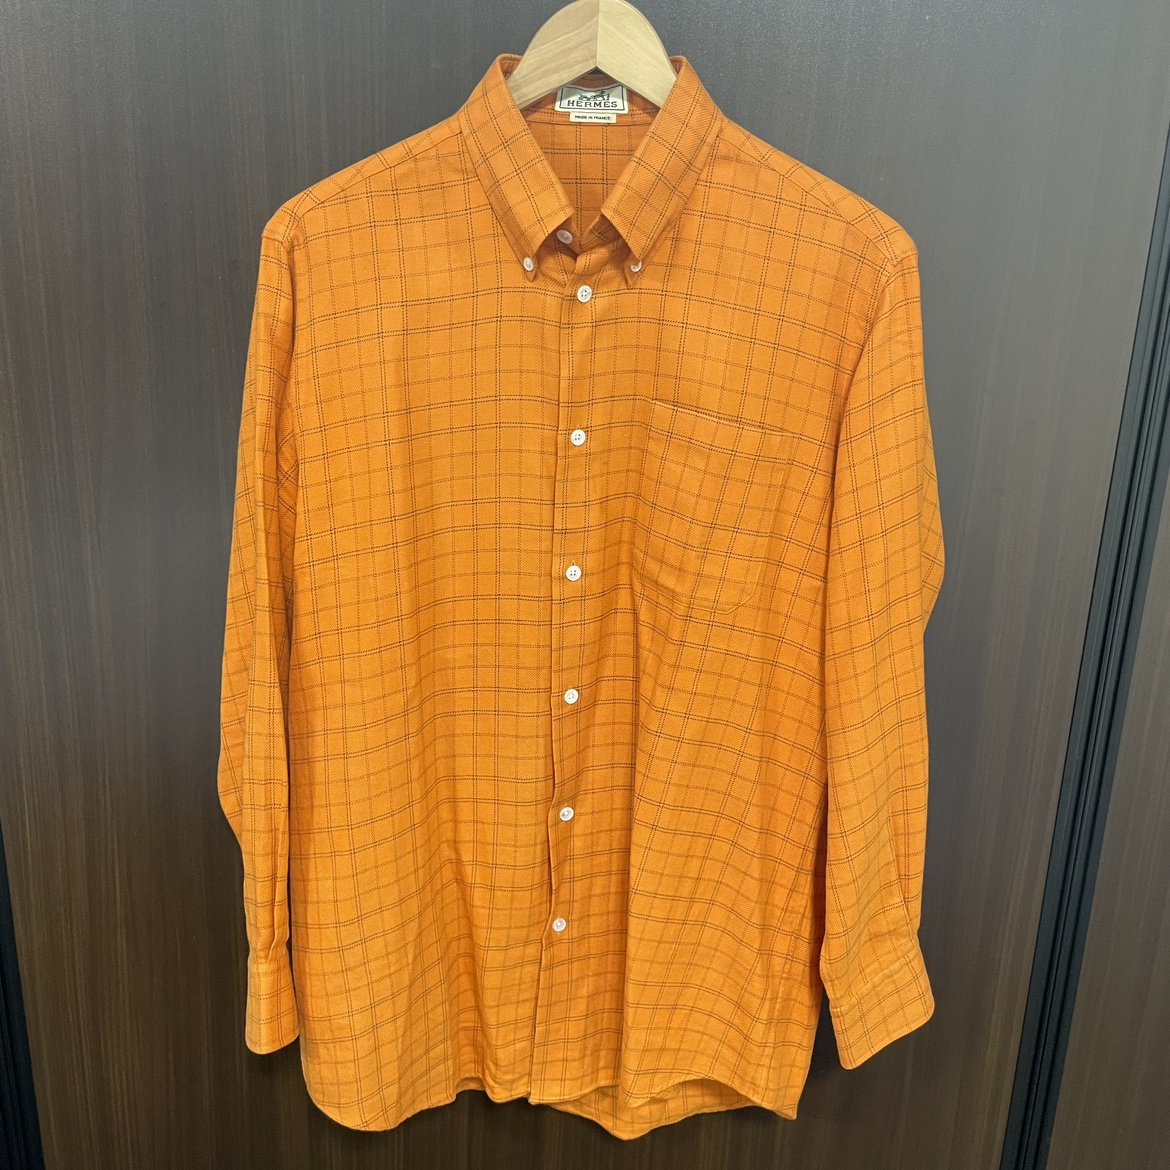 エルメスのｺﾞﾙﾁｴ期 オレンジ セリエボタンカフス ボタンダウンコットンシャツの買取実績です。